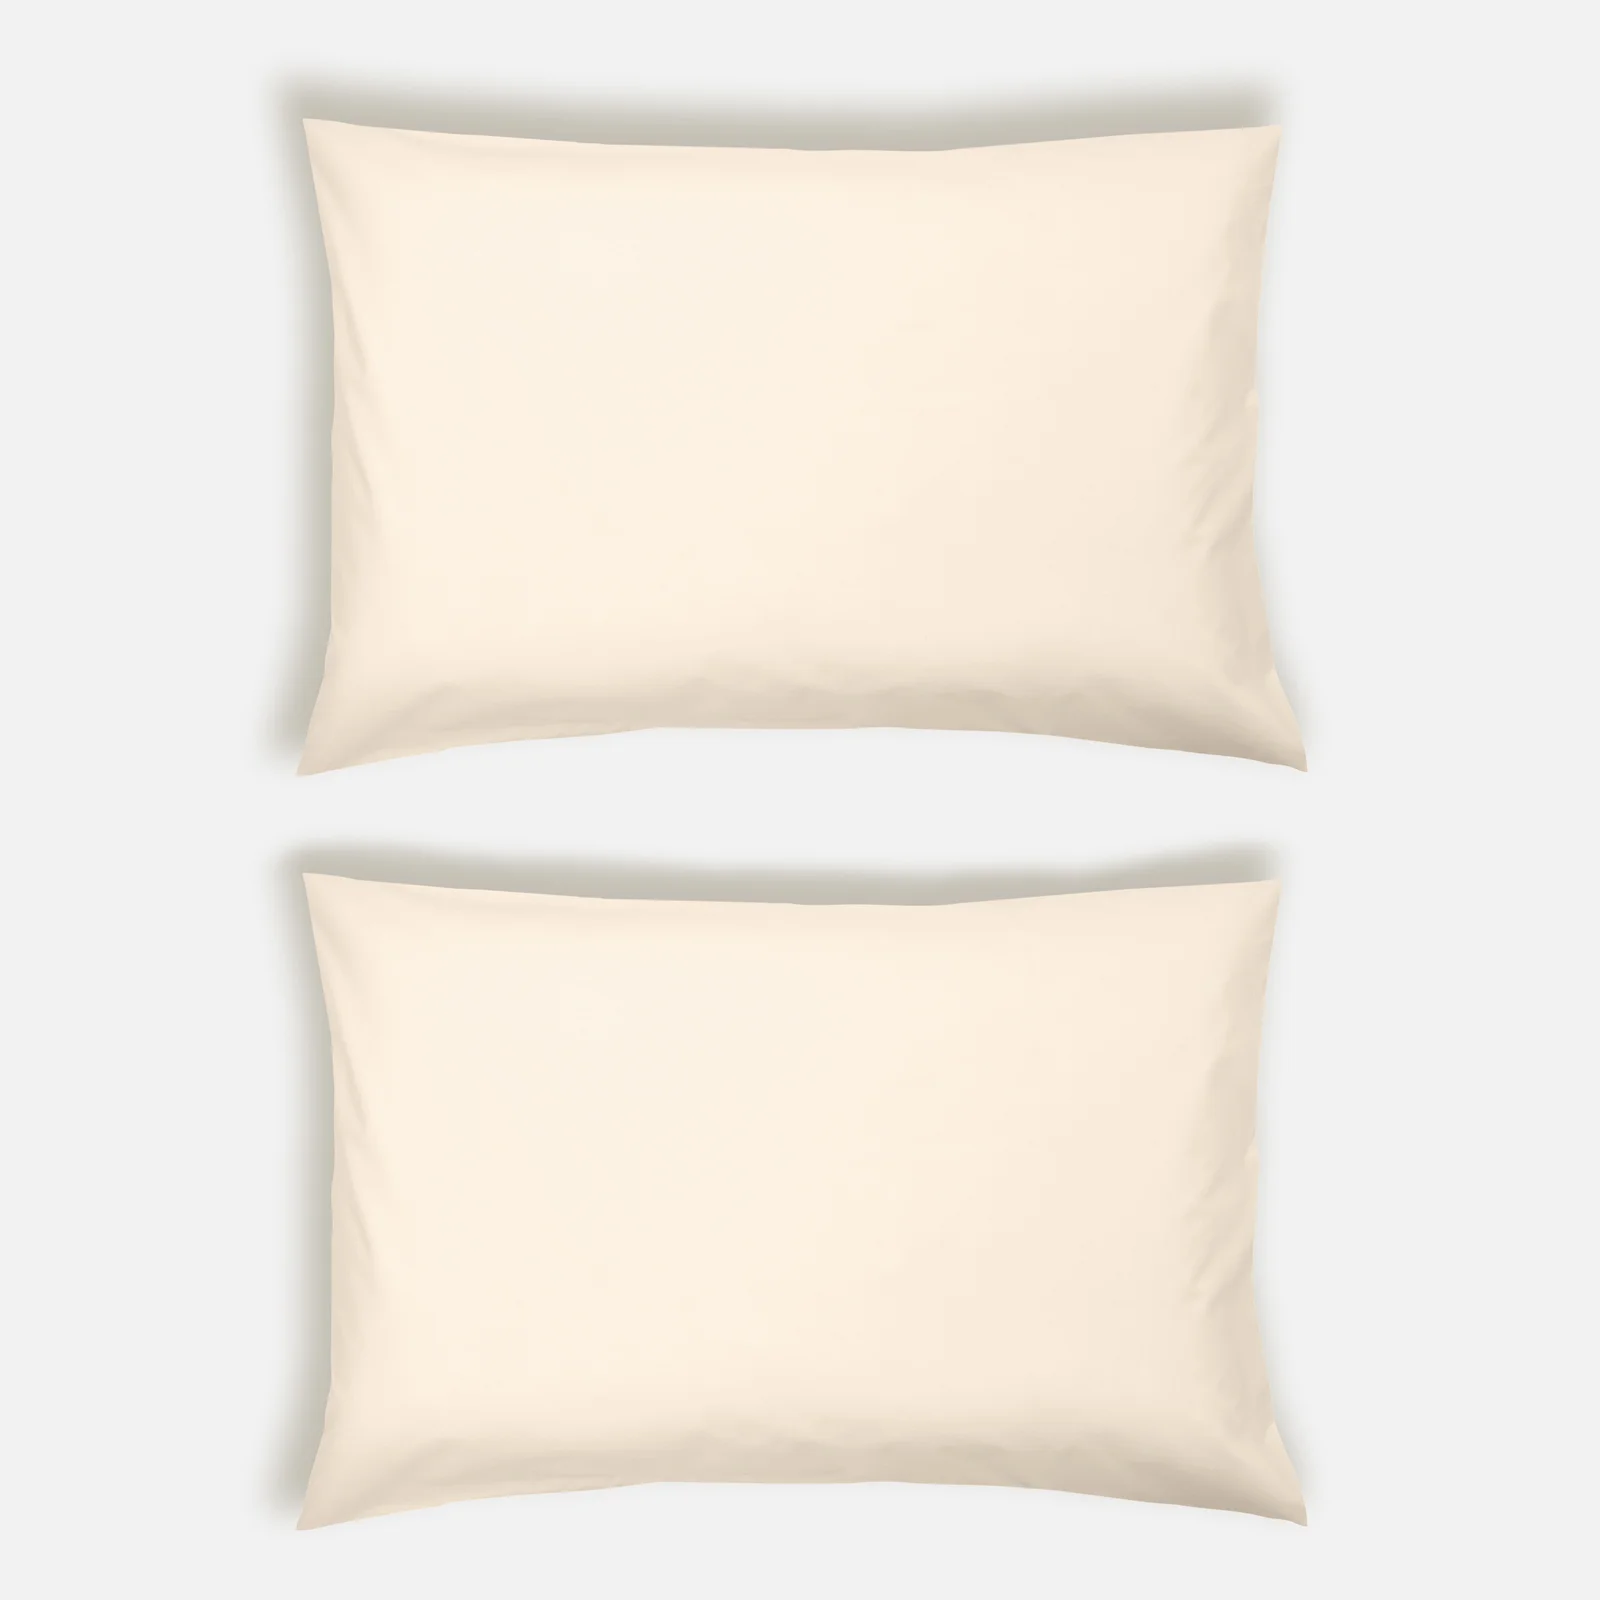 ïn home 200 Thread Count 100% Organic Cotton Pillowcase Pair - Natural Image 1